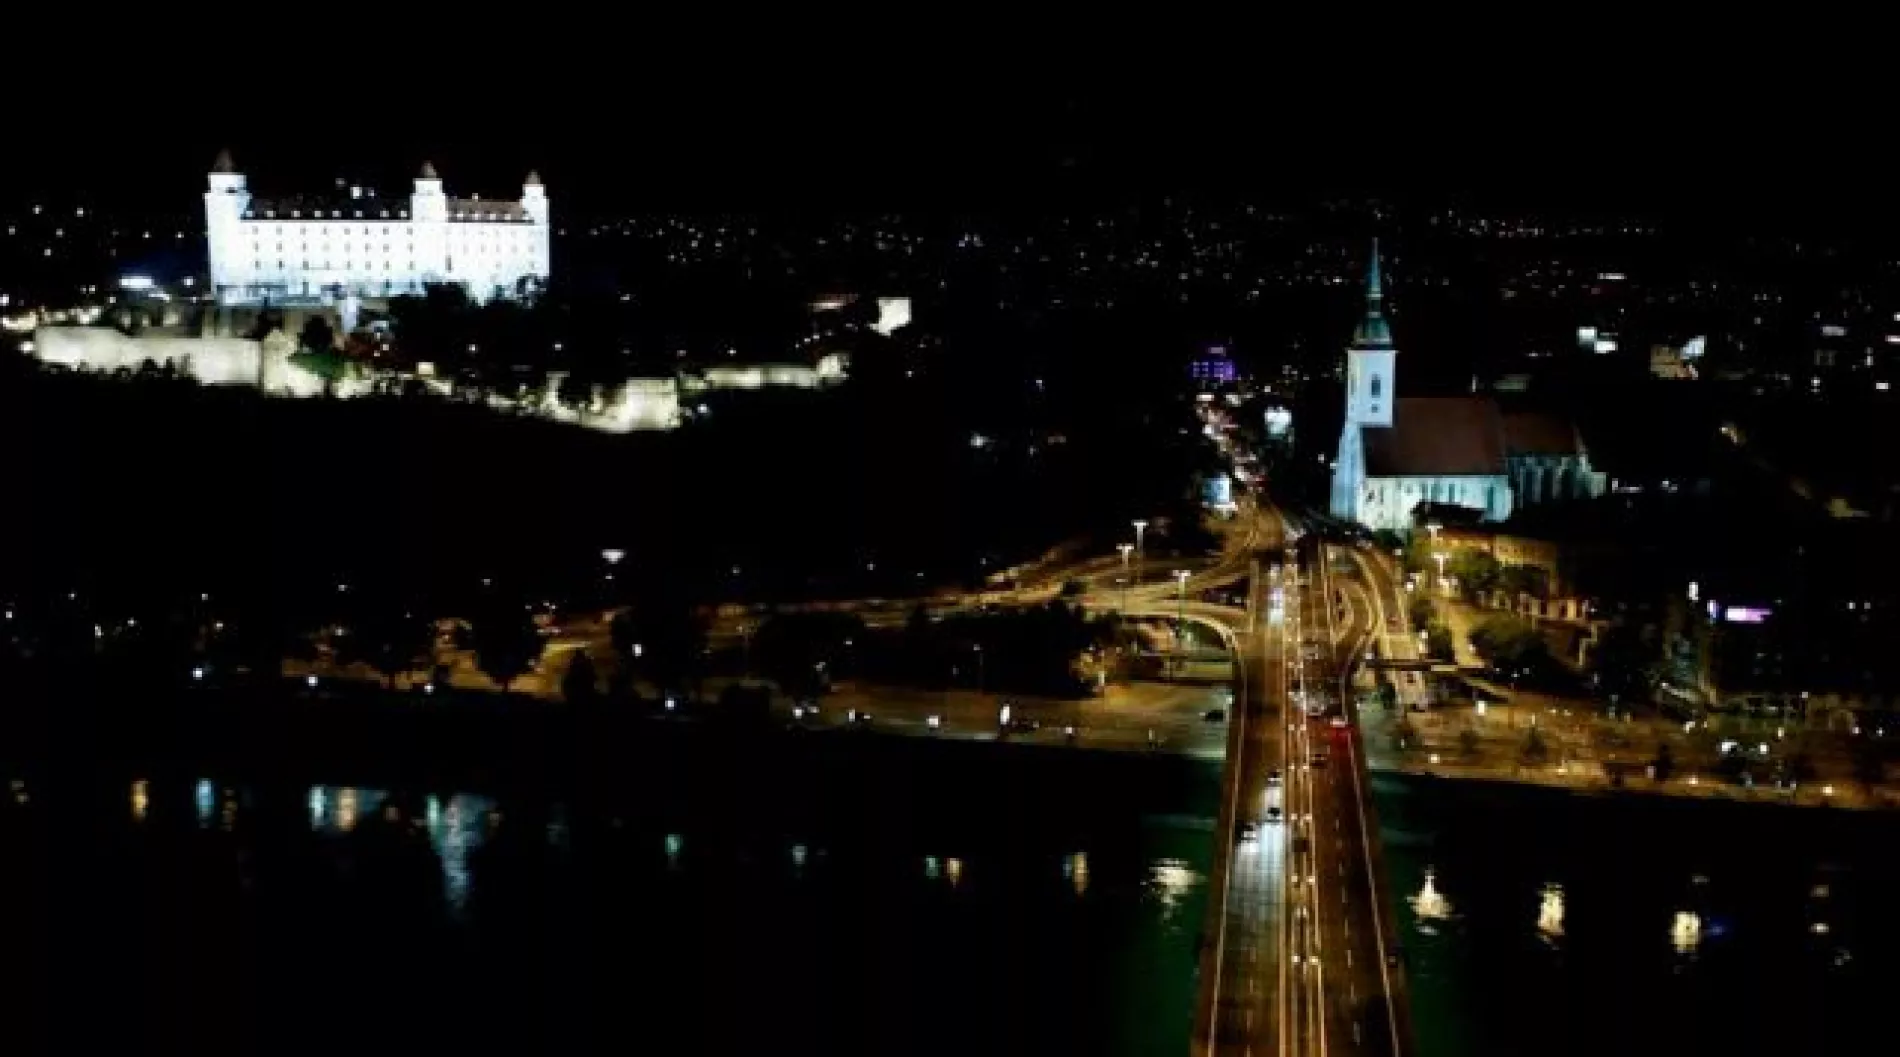 Primátor hlavného mesta zrušil súťaž na verejné osvetlenie